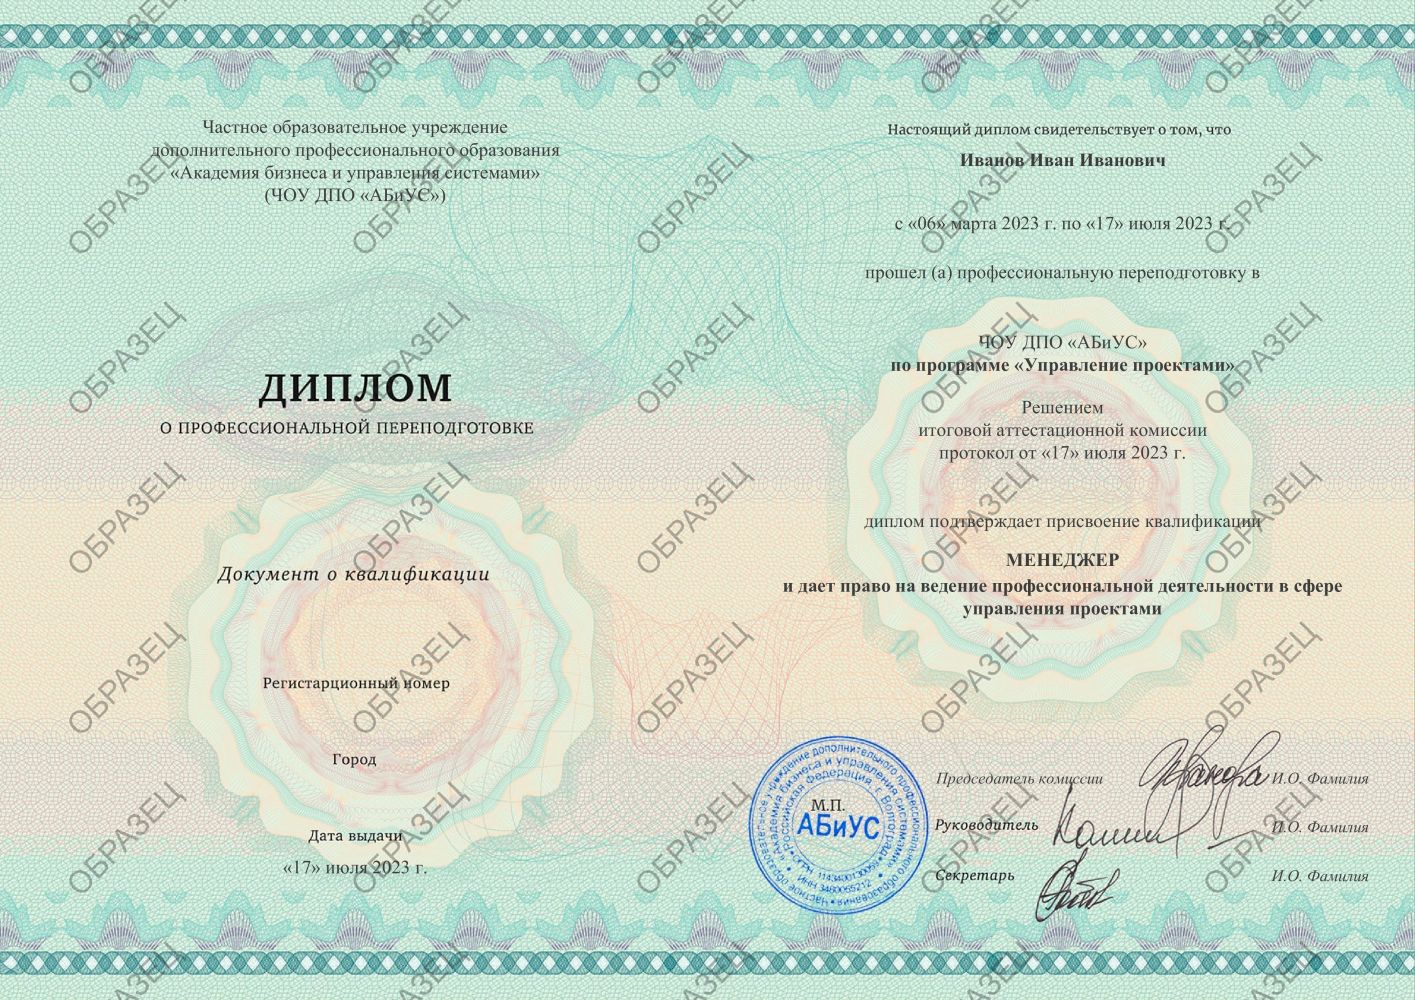 Диплом Управление проектами 510 часов 19125 руб.